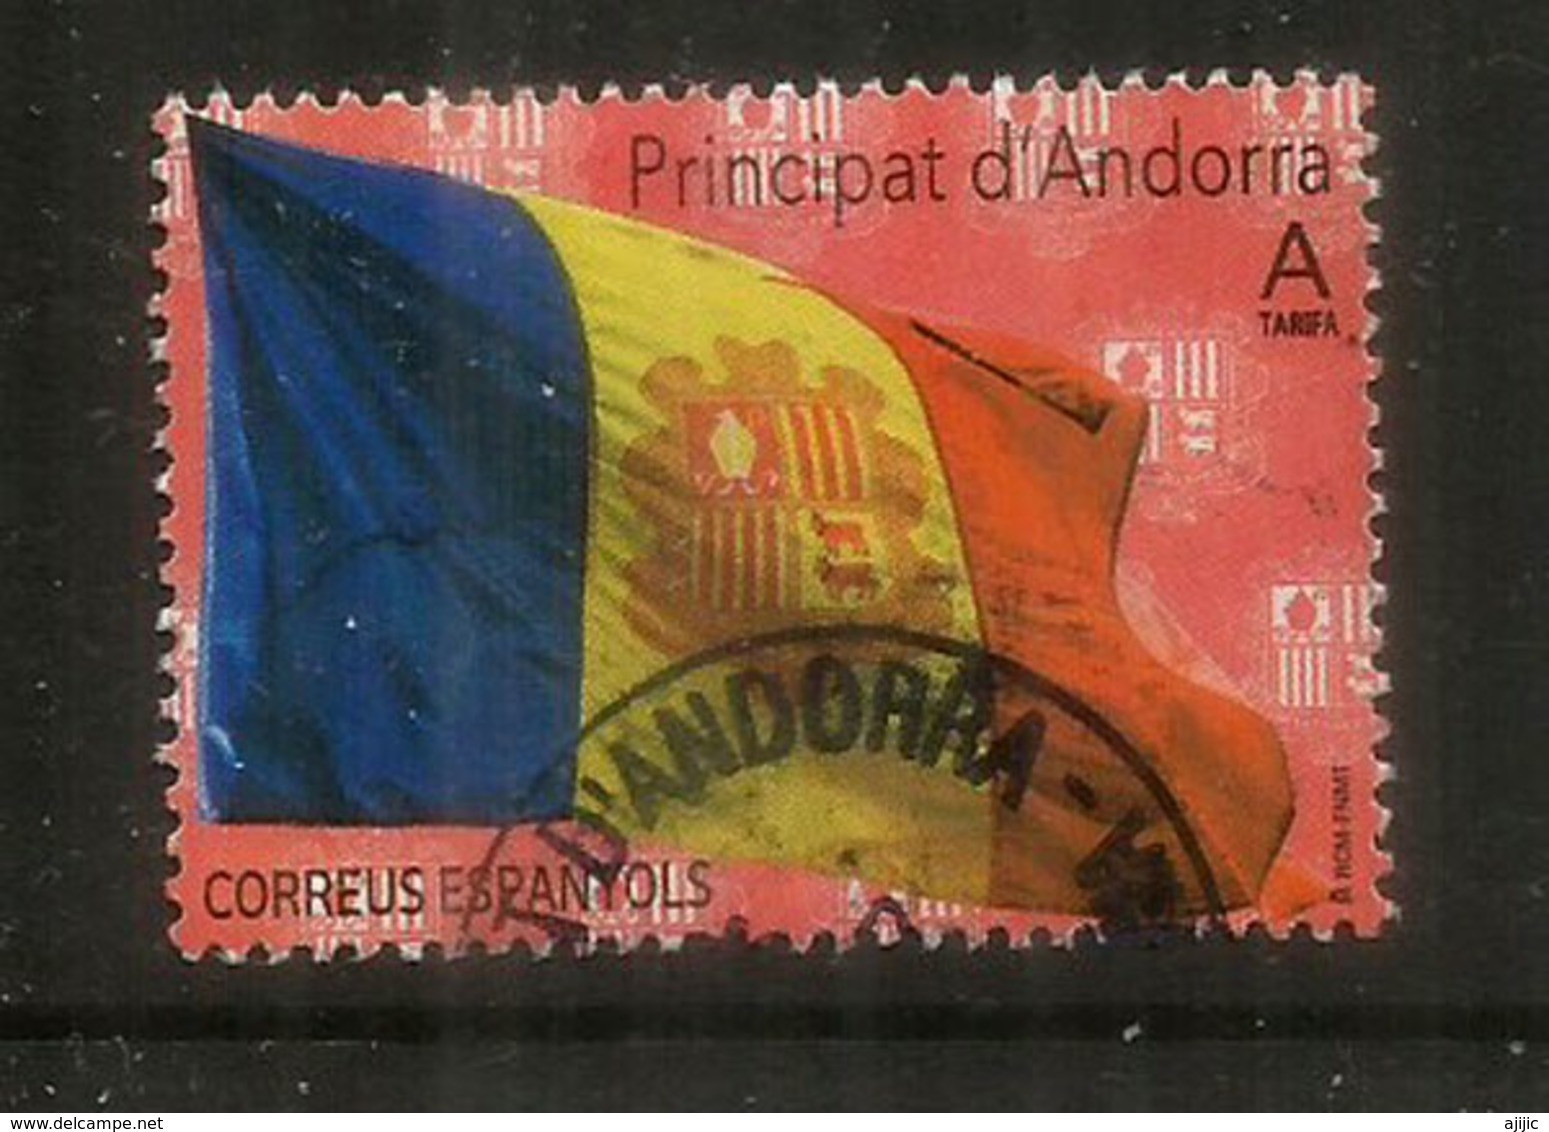 Bandera D'Andorra /Drapeau D'Andorre. (Poder és Més Fort) 2020,  Oblitéré,  1 ère Qualité. - Gebraucht